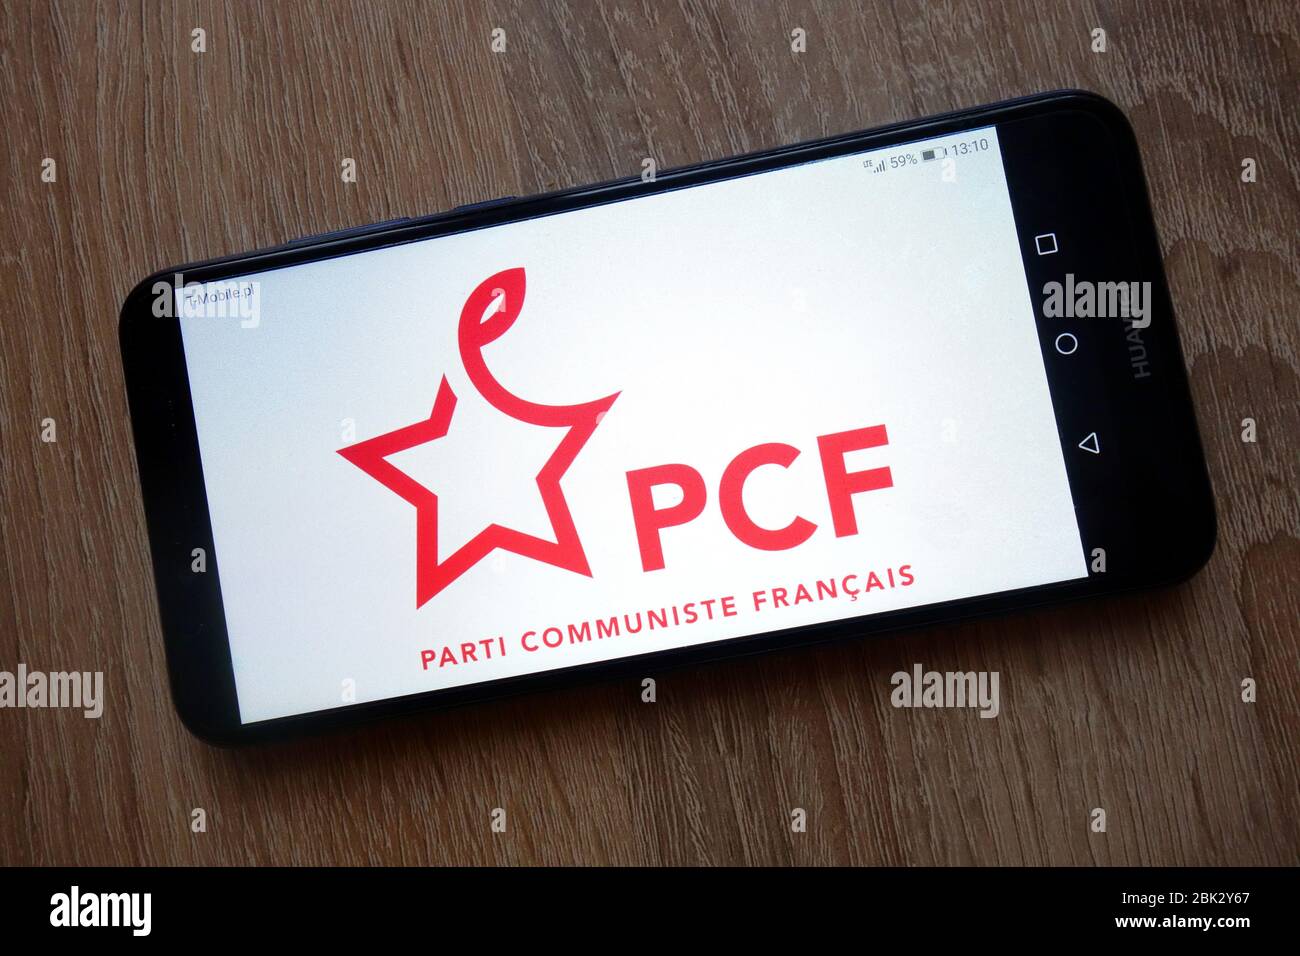 PCF (Parti communiste français) logo du parti politique français affiché sur le smartphone Banque D'Images